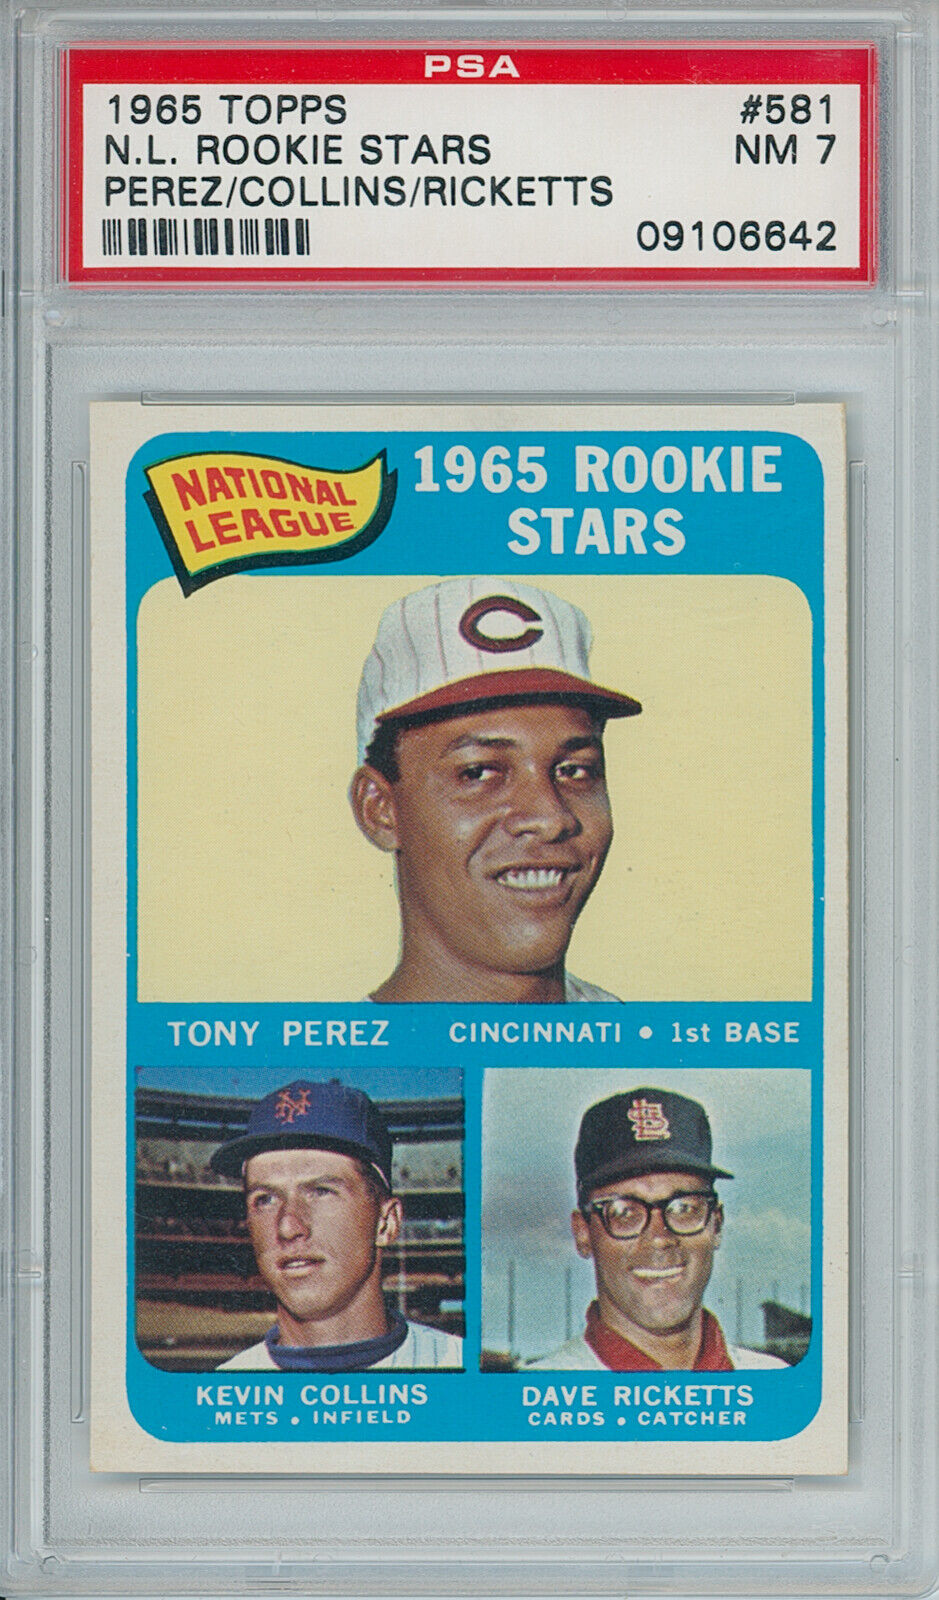 1965 Topps N.L. Rookie Stars. Perez, Collins, Rickets. PSA 7